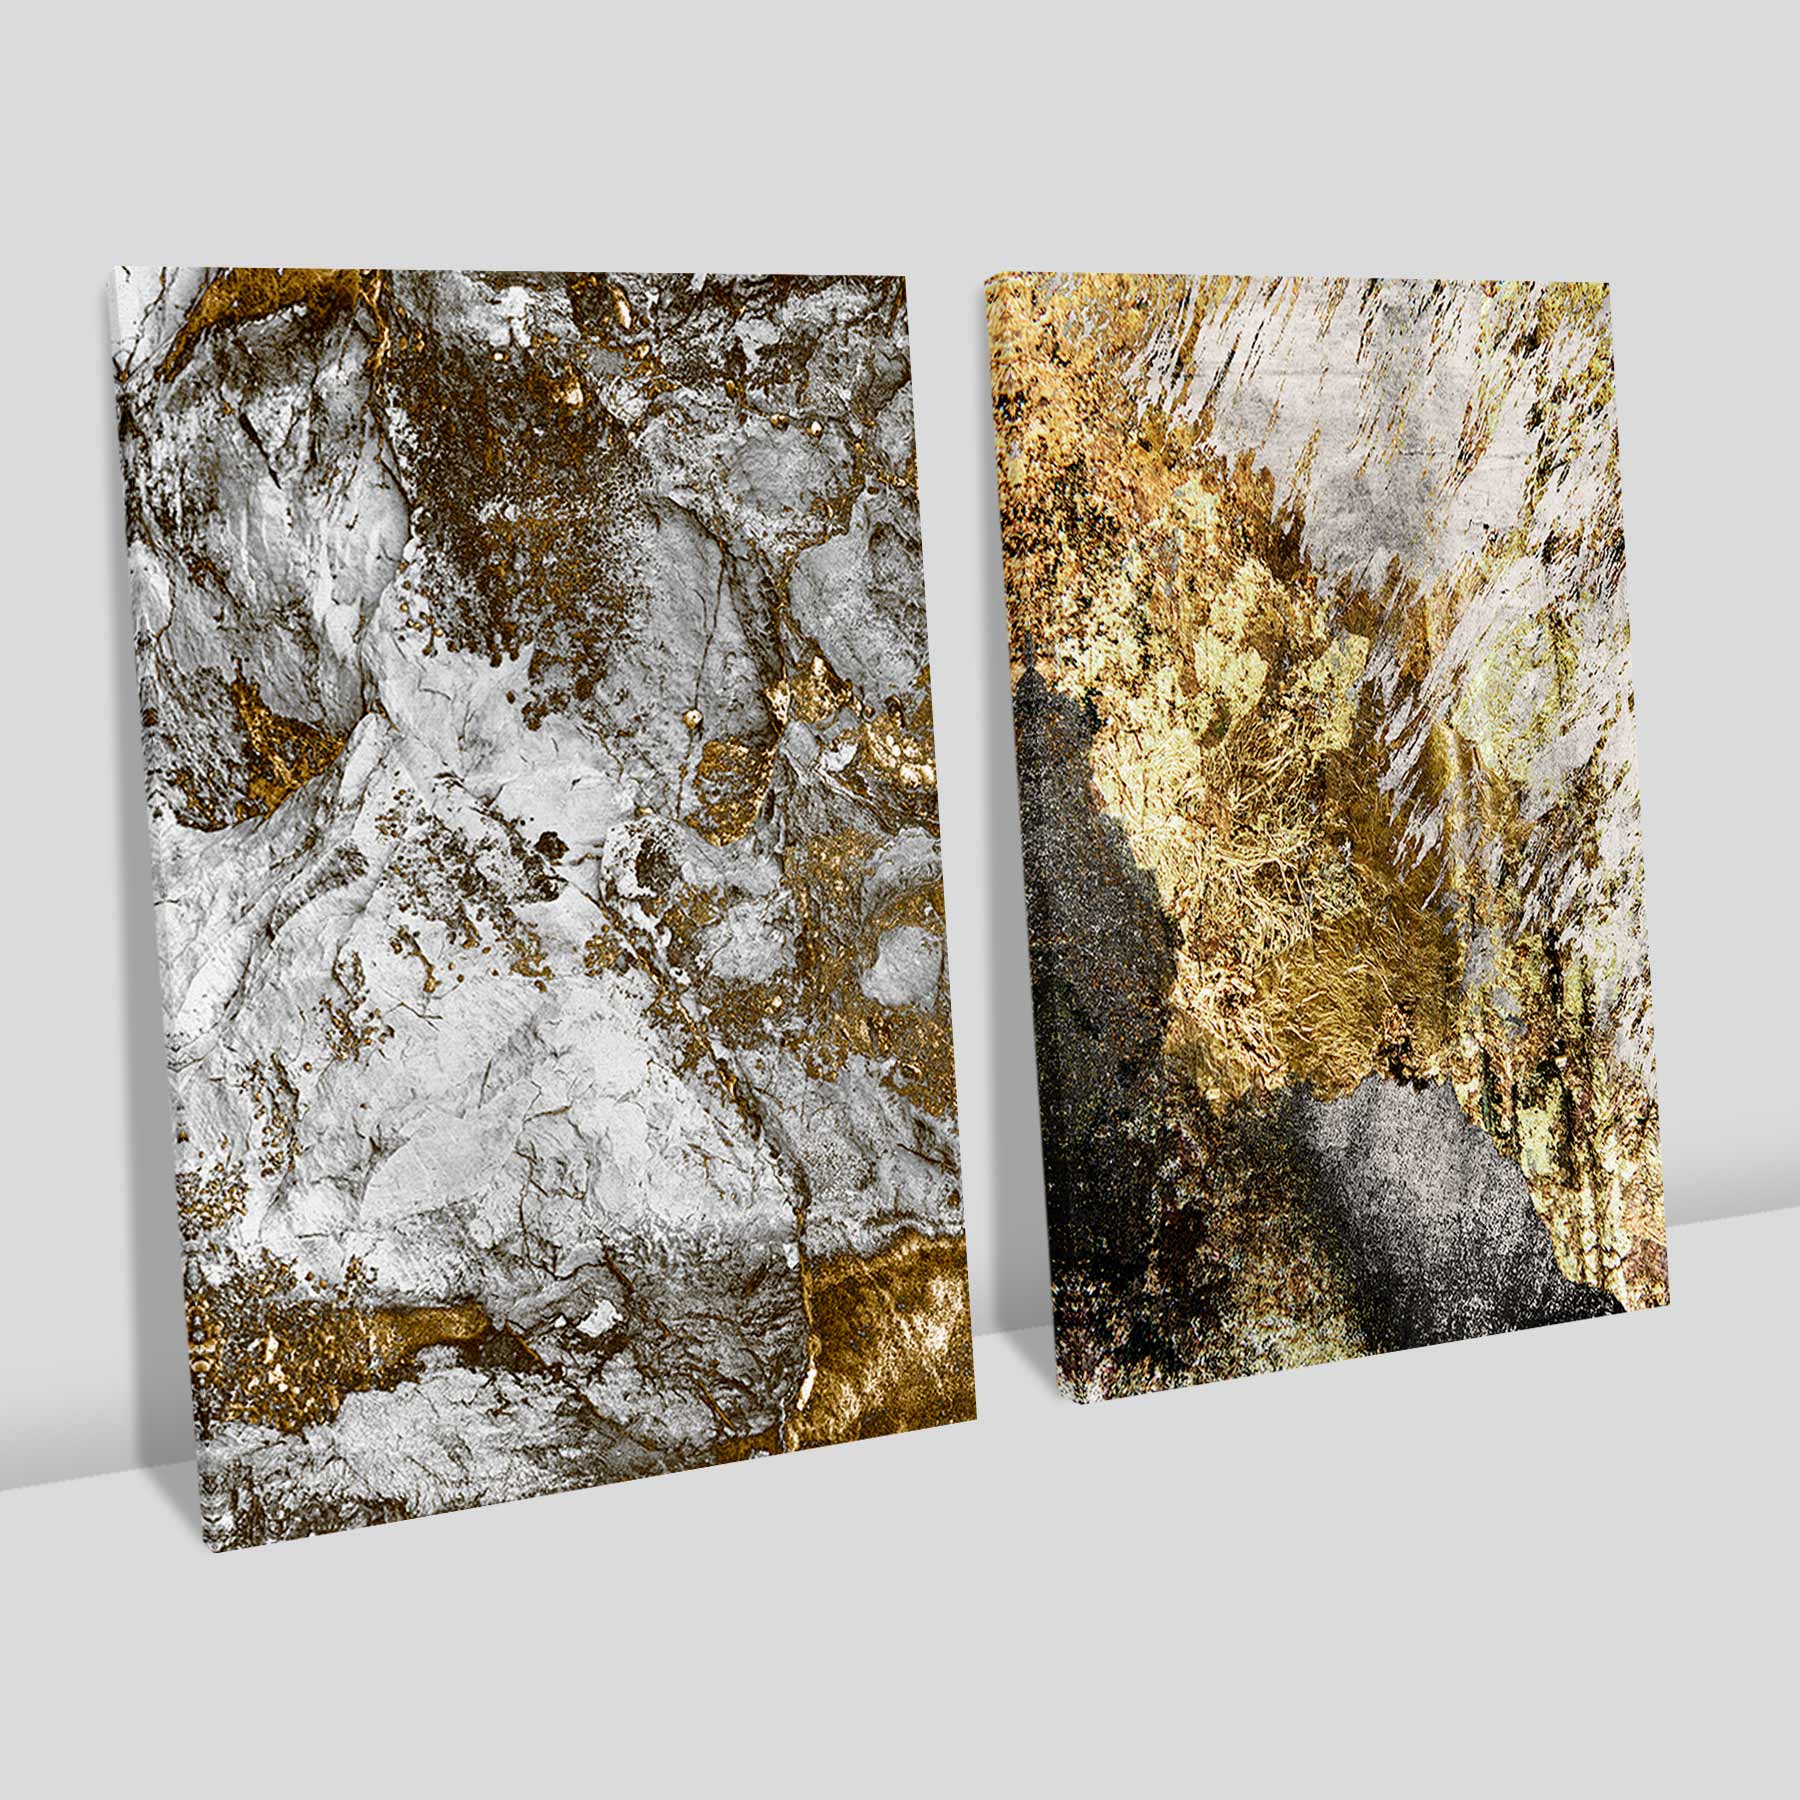 Kit 2 quadros retangulares - Duo rocky gold